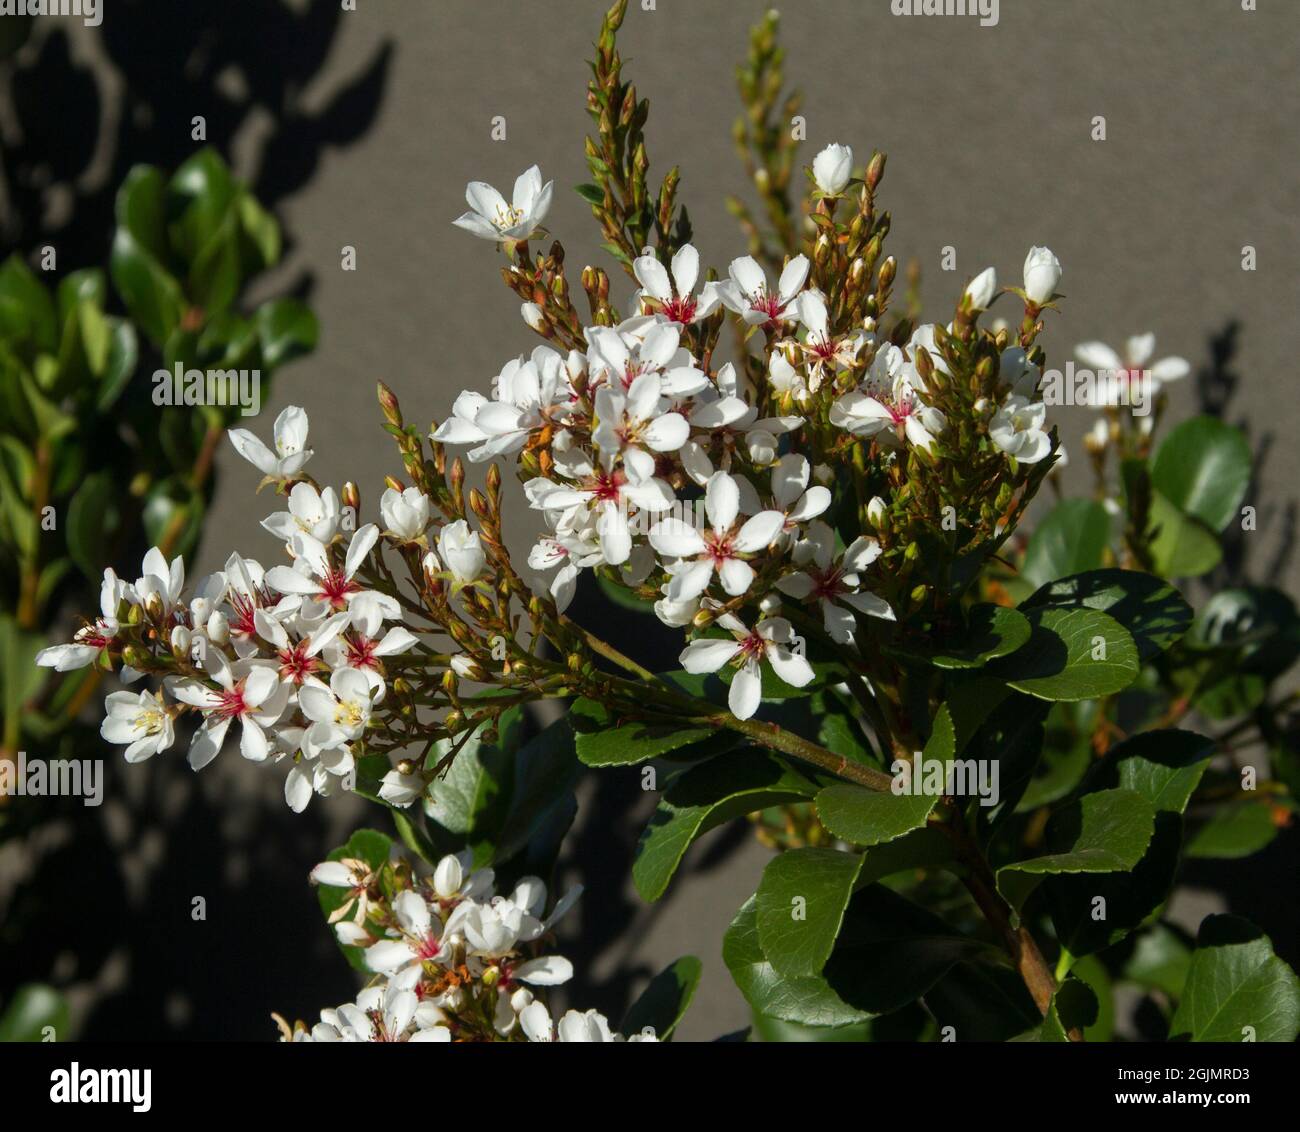 Fiori bianchi profumati di Rhaphiolpsis indica, Hawthorn indiano, arbusto sempreverde tollerante alla siccità, su sfondo di fogliame verde Foto Stock